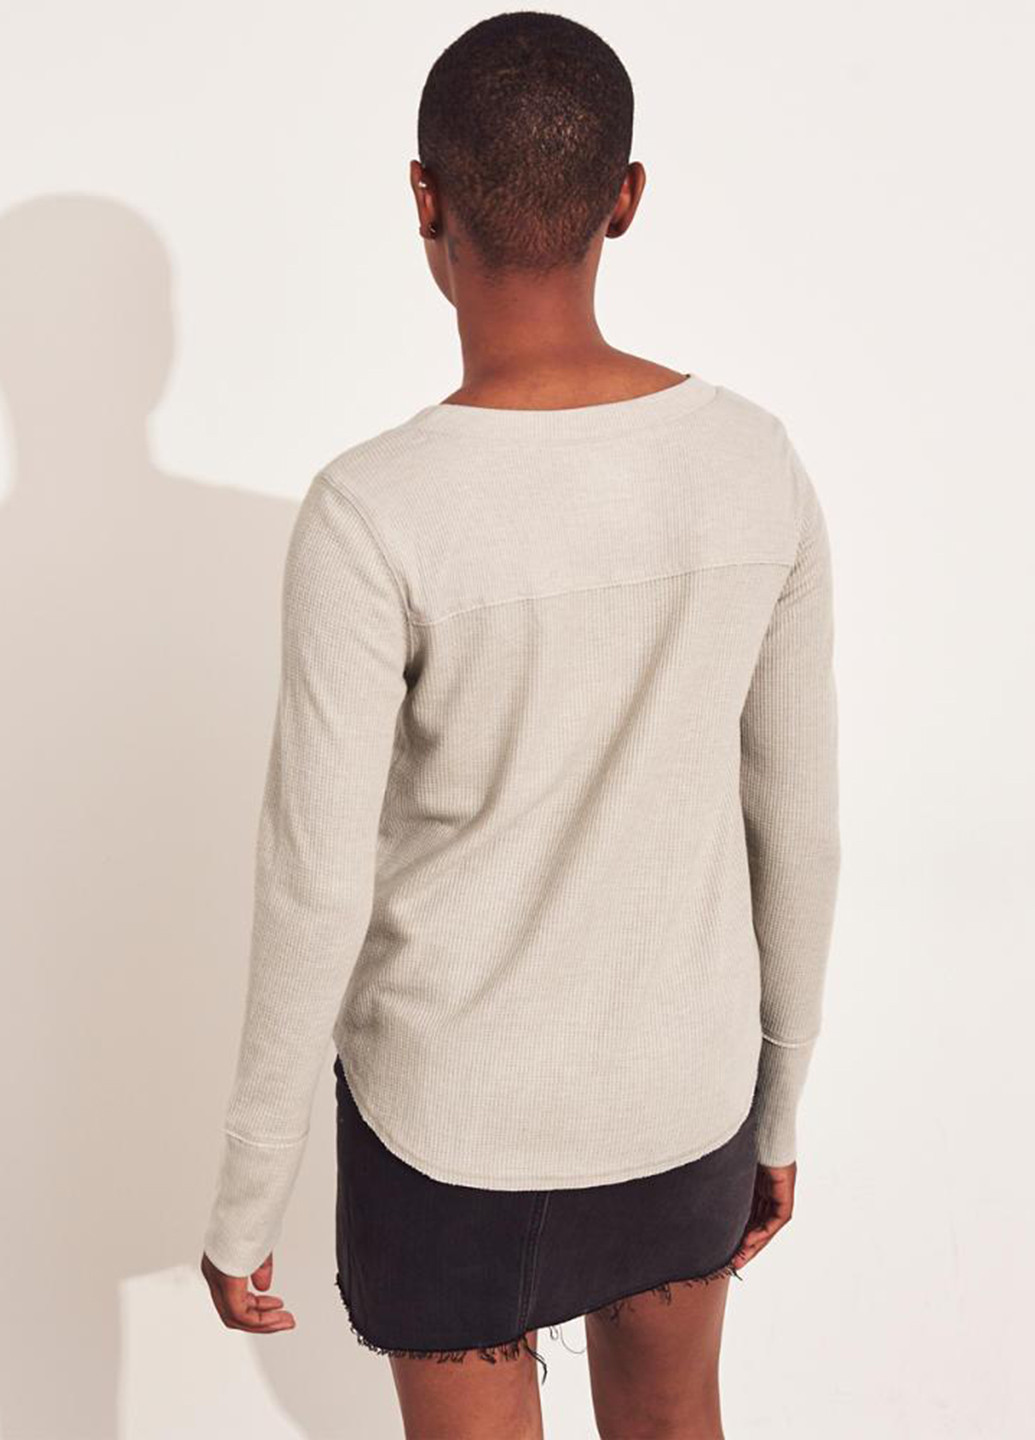 Светло-серый демисезонный пуловер пуловер Hollister